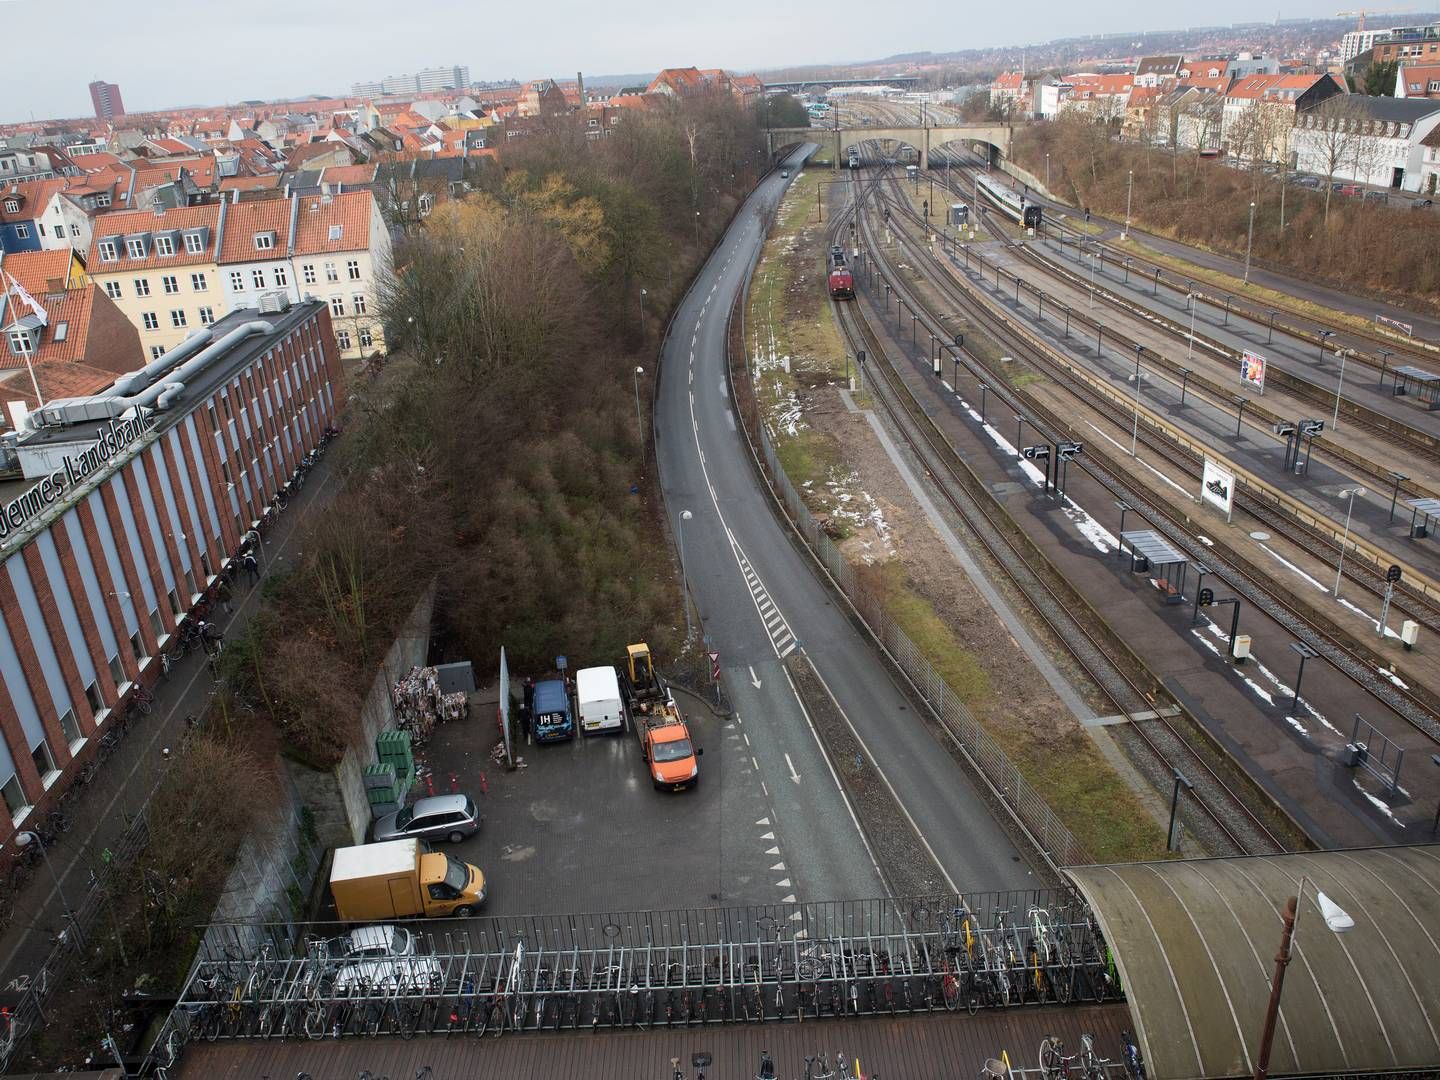 Udsigt over jernbanesporene ved Aarhus Hovedbanegård. | Foto: Charlotte De La Fuente/Jyllands-Posten/Ritzau Scanpix